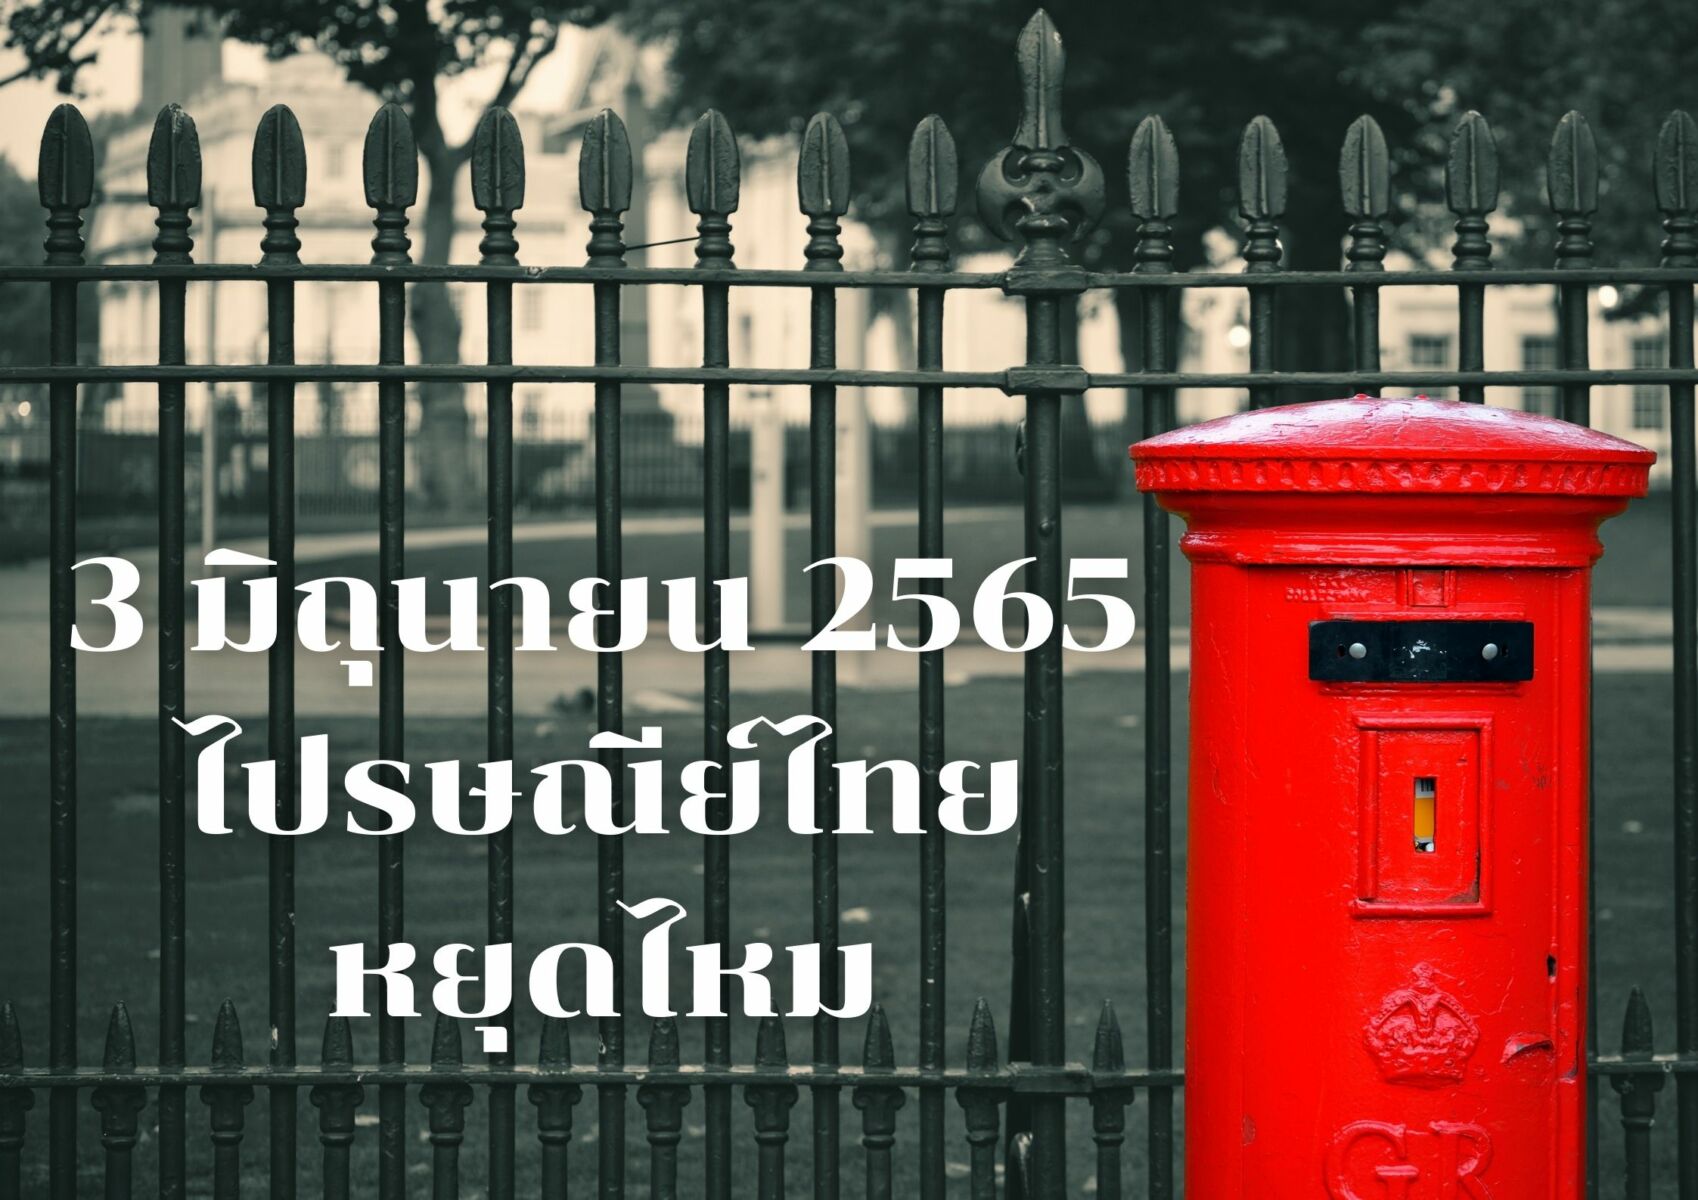 3 มิถุนายน 2565 ไปรษณีย์ไทย หยุดไหม